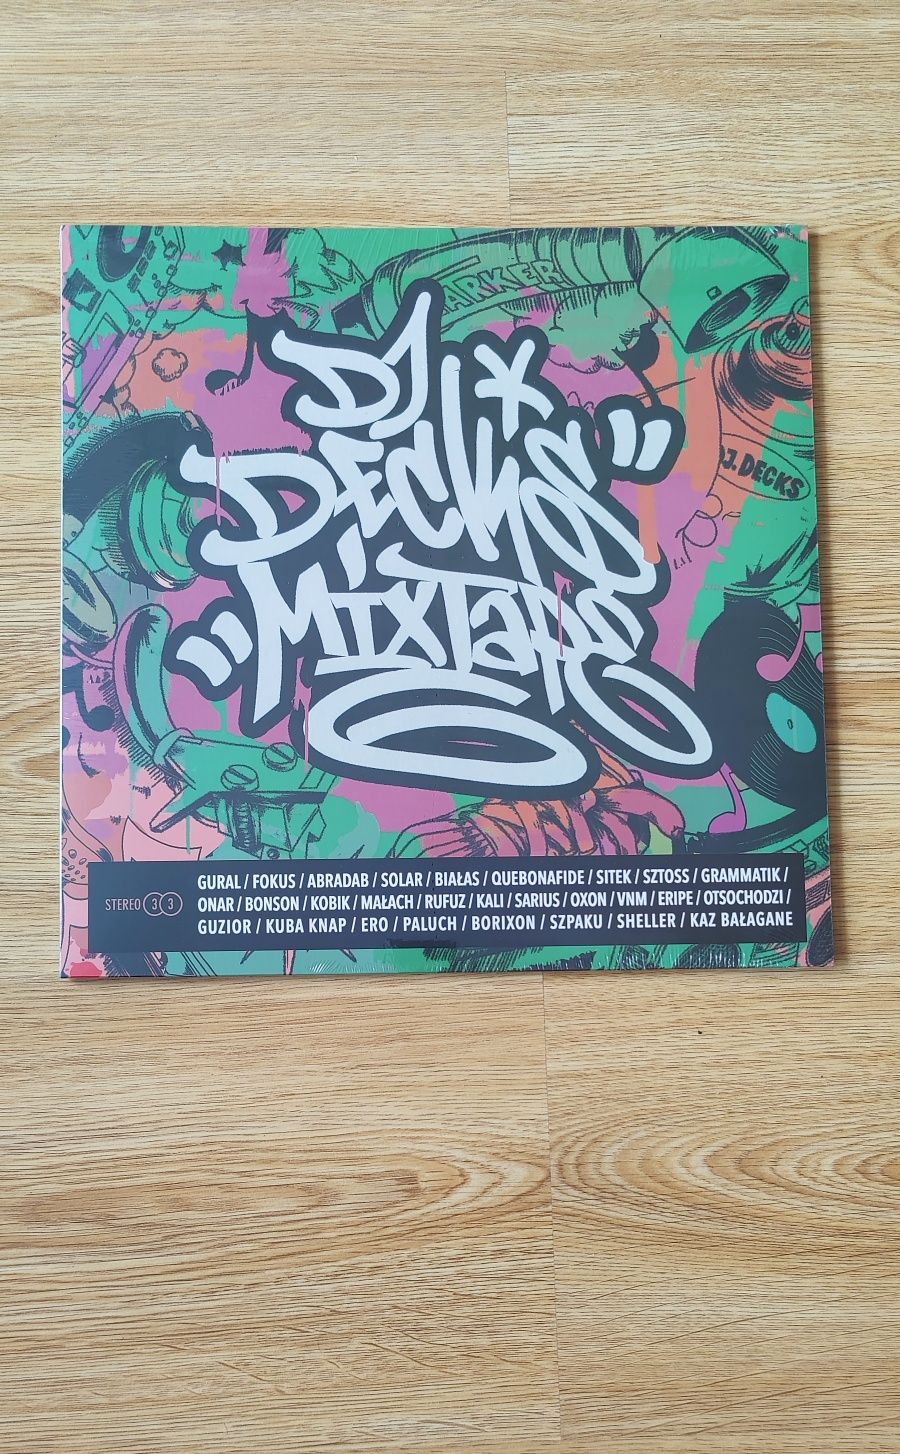 Dj Decks Mixtape 6 LP